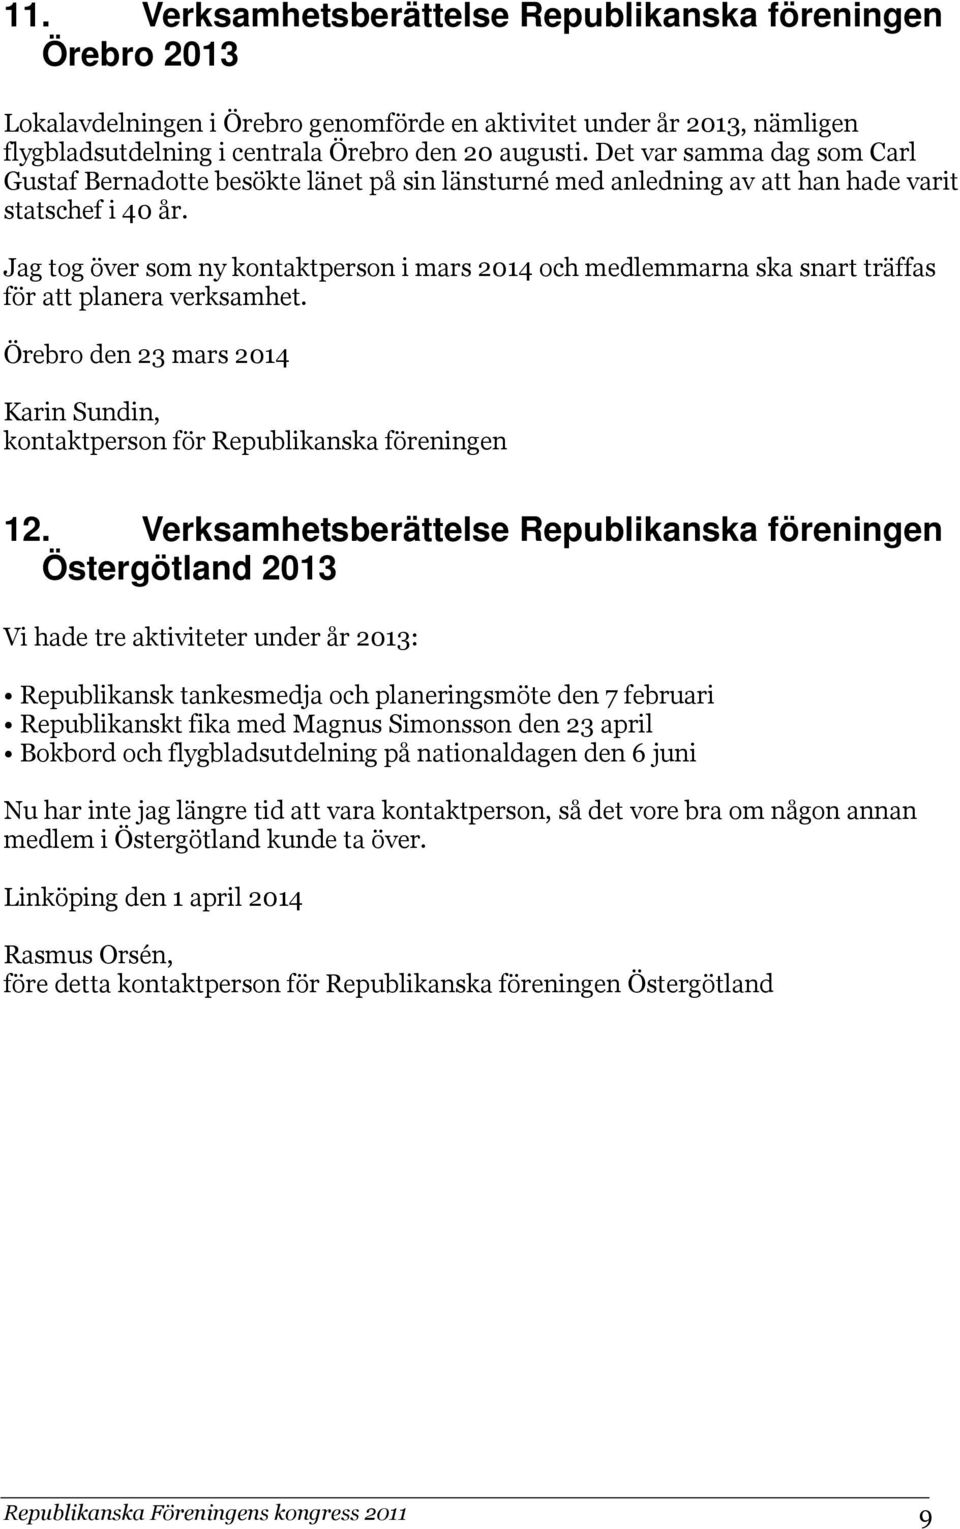 Jag tog över som ny kontaktperson i mars 2014 och medlemmarna ska snart träffas för att planera verksamhet. Örebro den 23 mars 2014 Karin Sundin, kontaktperson för Republikanska föreningen 12.